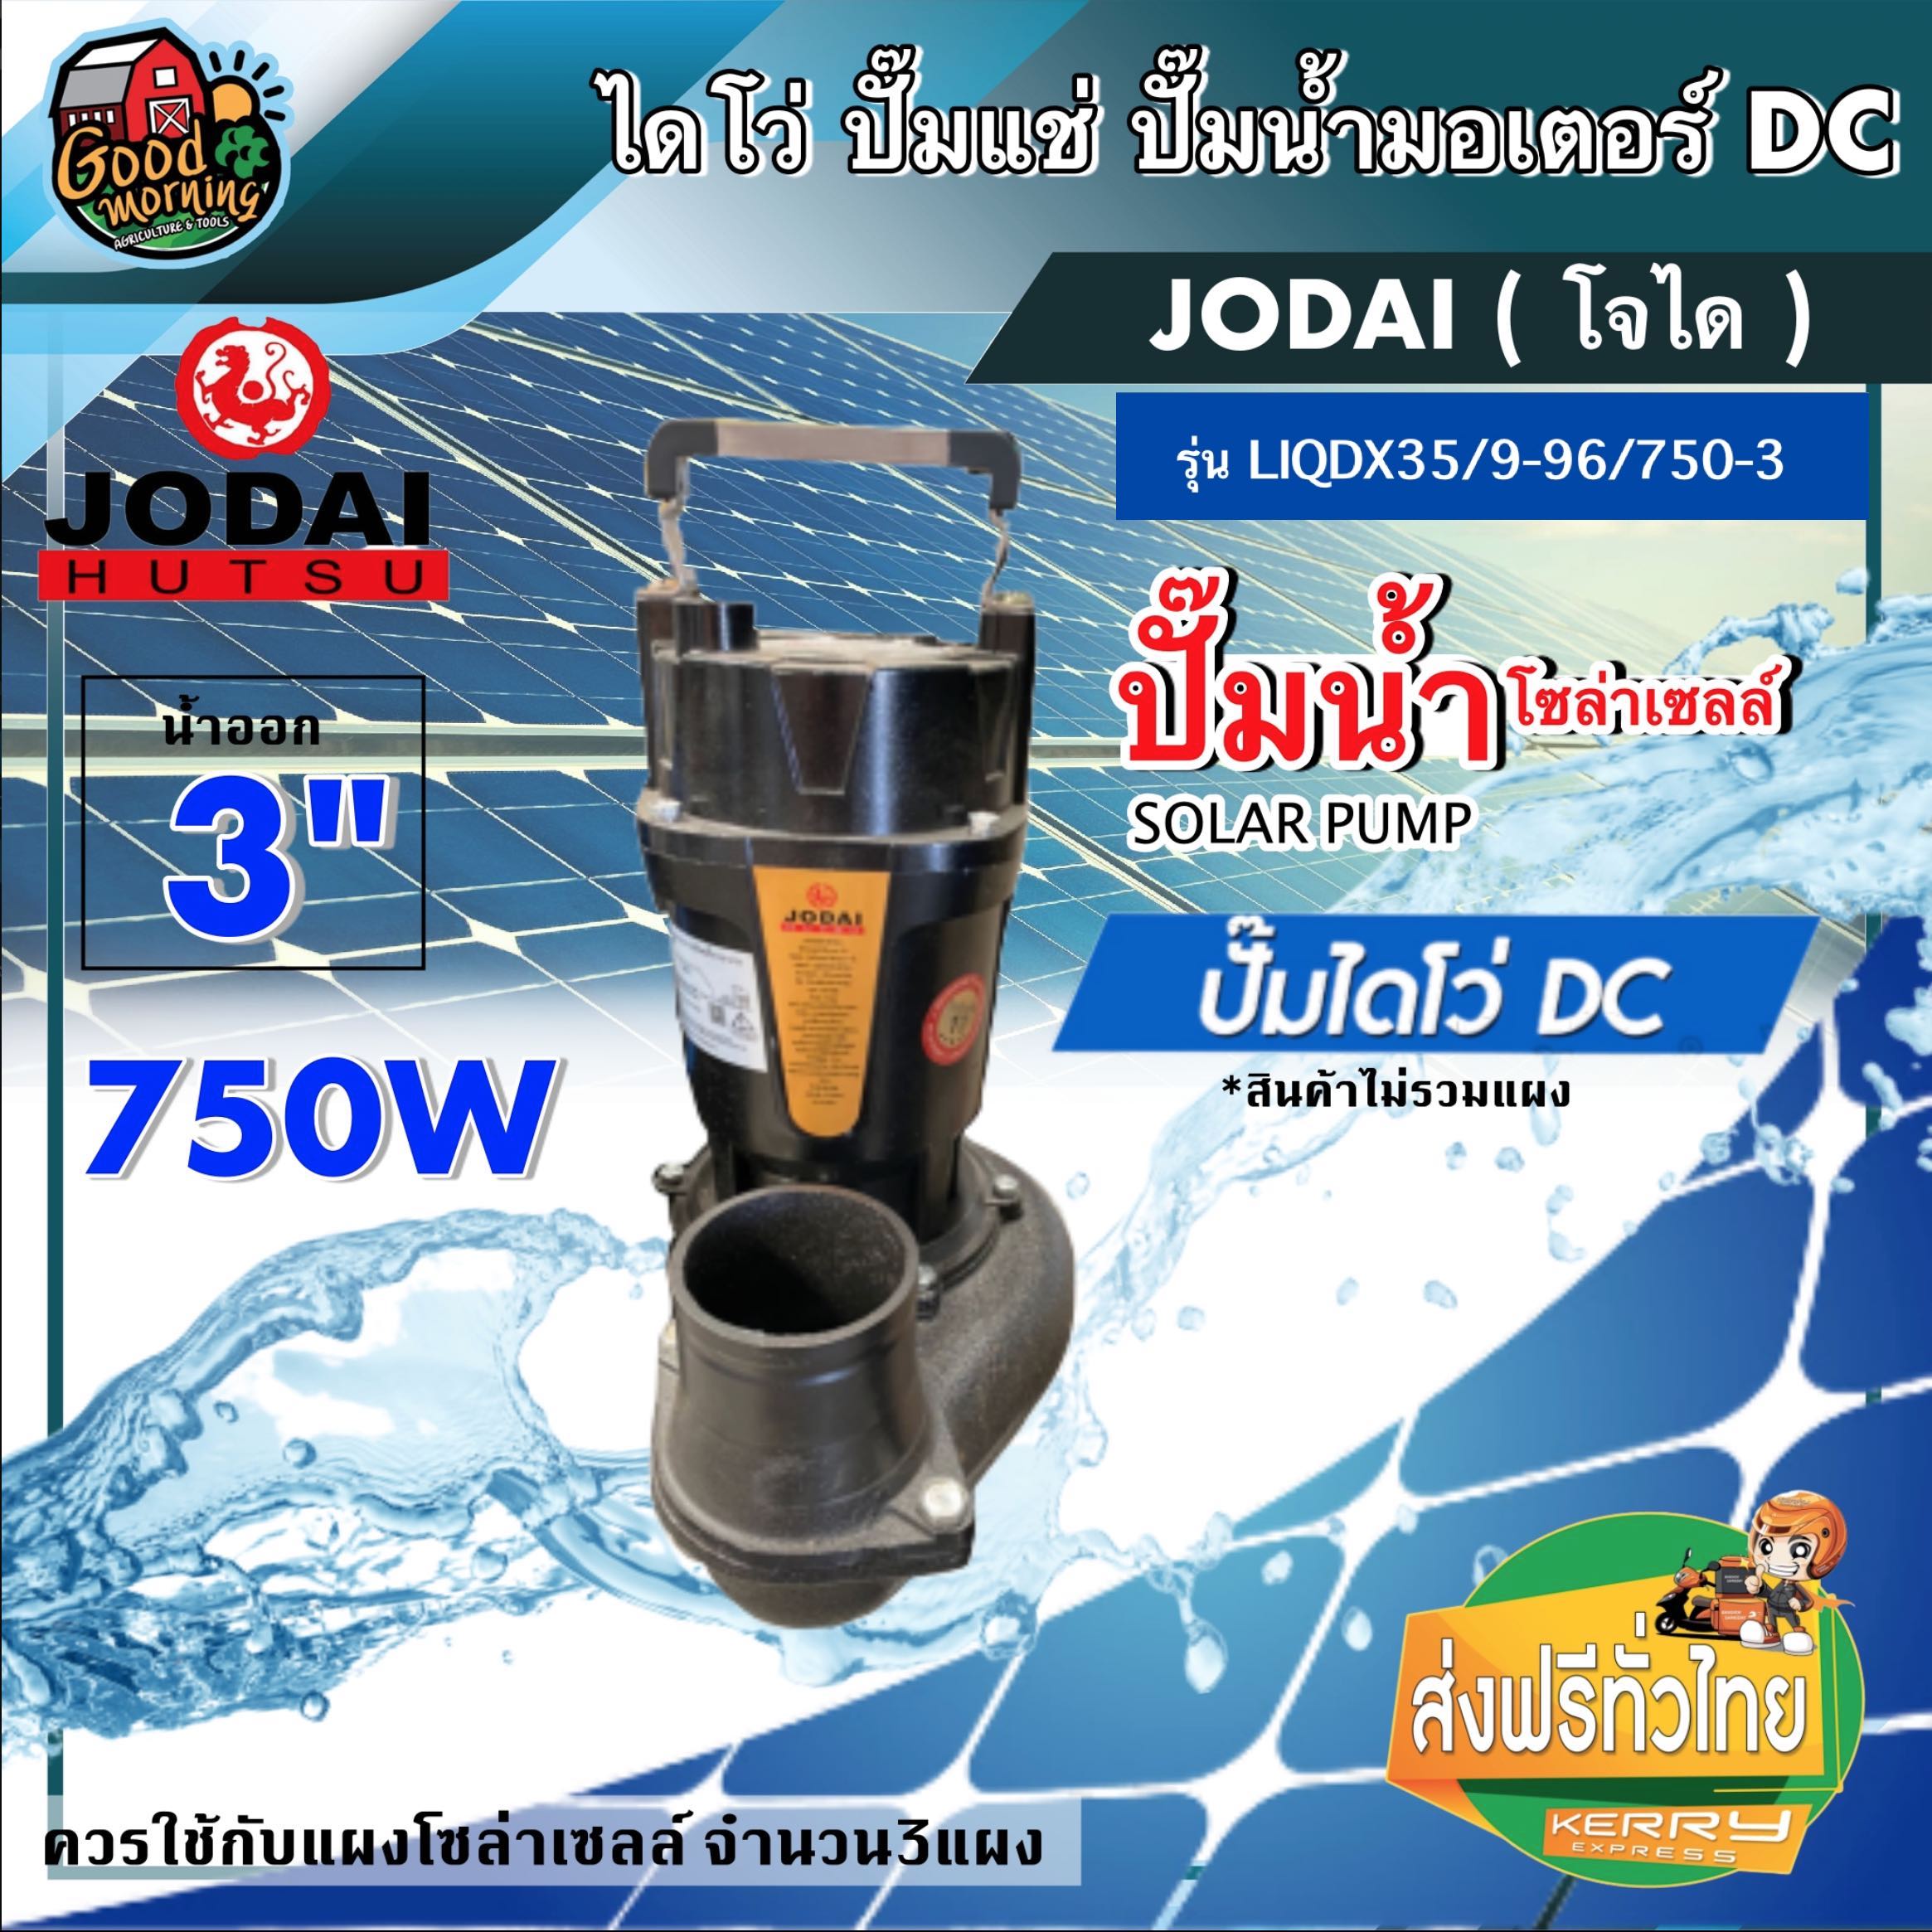 ไดโว่ DC JODAI รุ่น LIQDX35/9-96/750-3 750W น้ำออก3นิ้ว ขนาด 3นิ้ว โจได Divo ไดโว่ ปั๊มแช่ ปั๊มน้ำ มอเตอร์ ปั๊มจุ่ม SOLAR PUMP โซล่า ปั้ม ส่งฟรีทั่วไทย เก็บเงิ